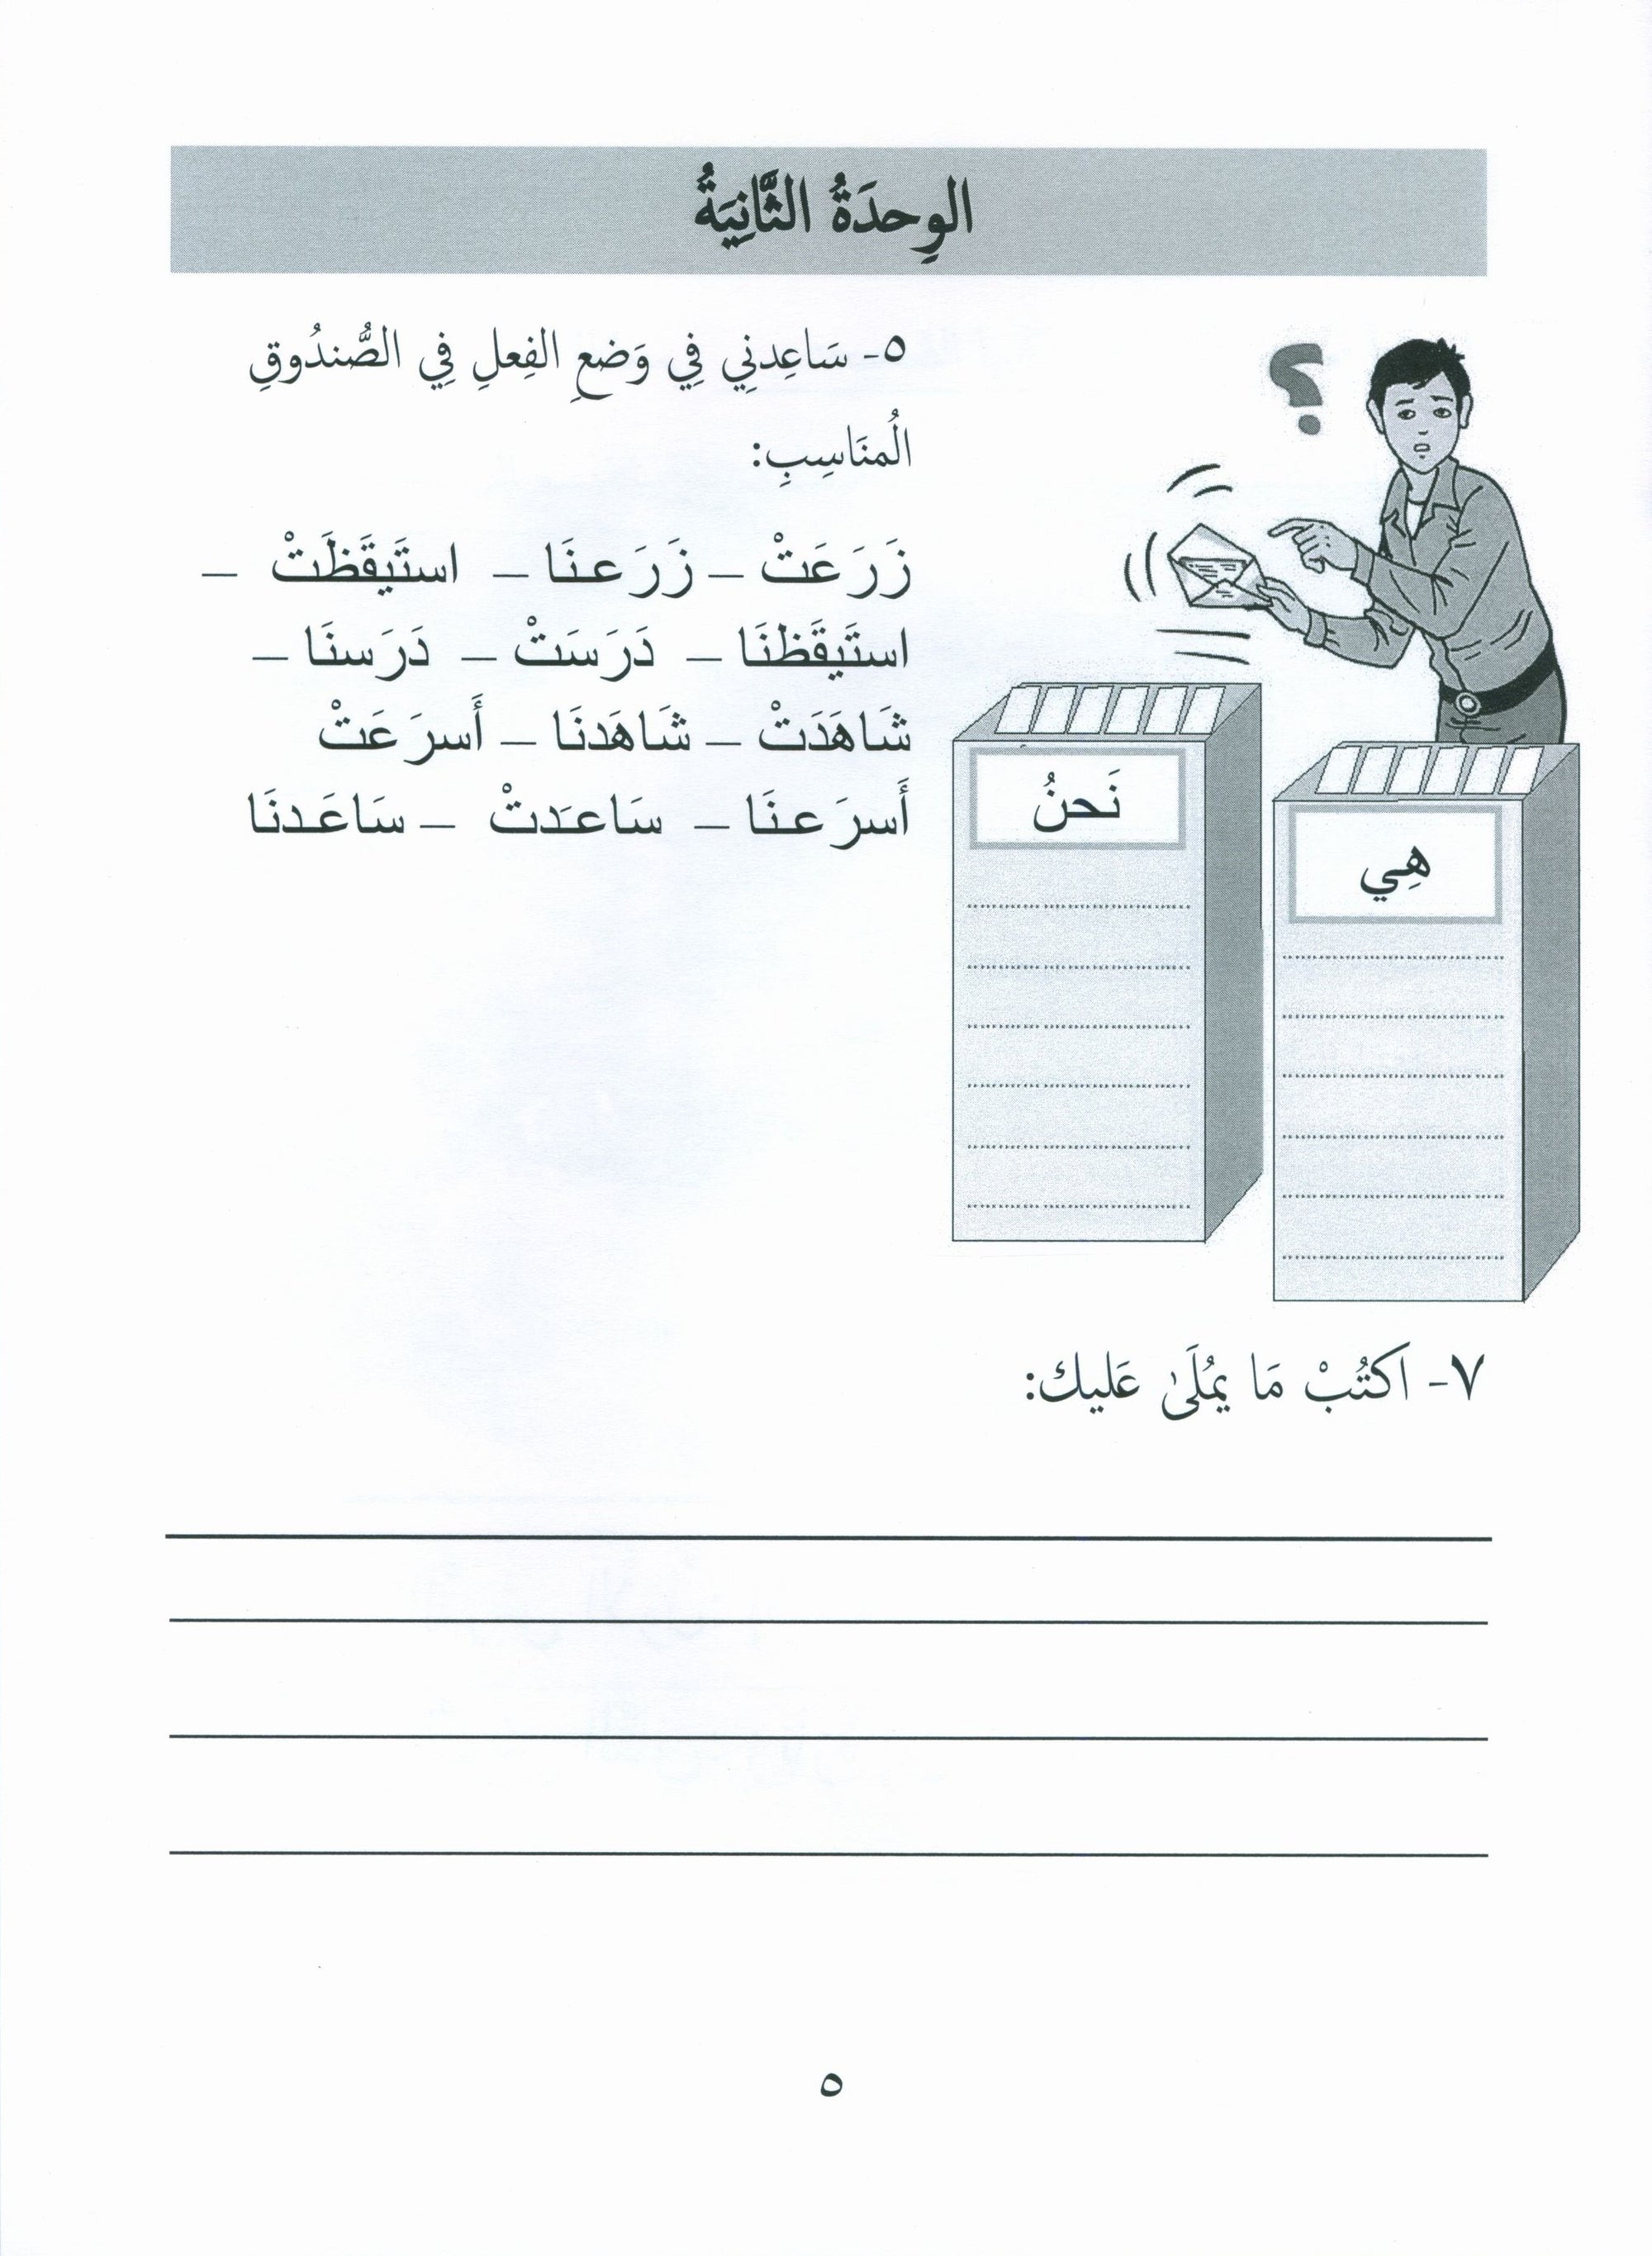 Gems of Arabic Assessment Level 2